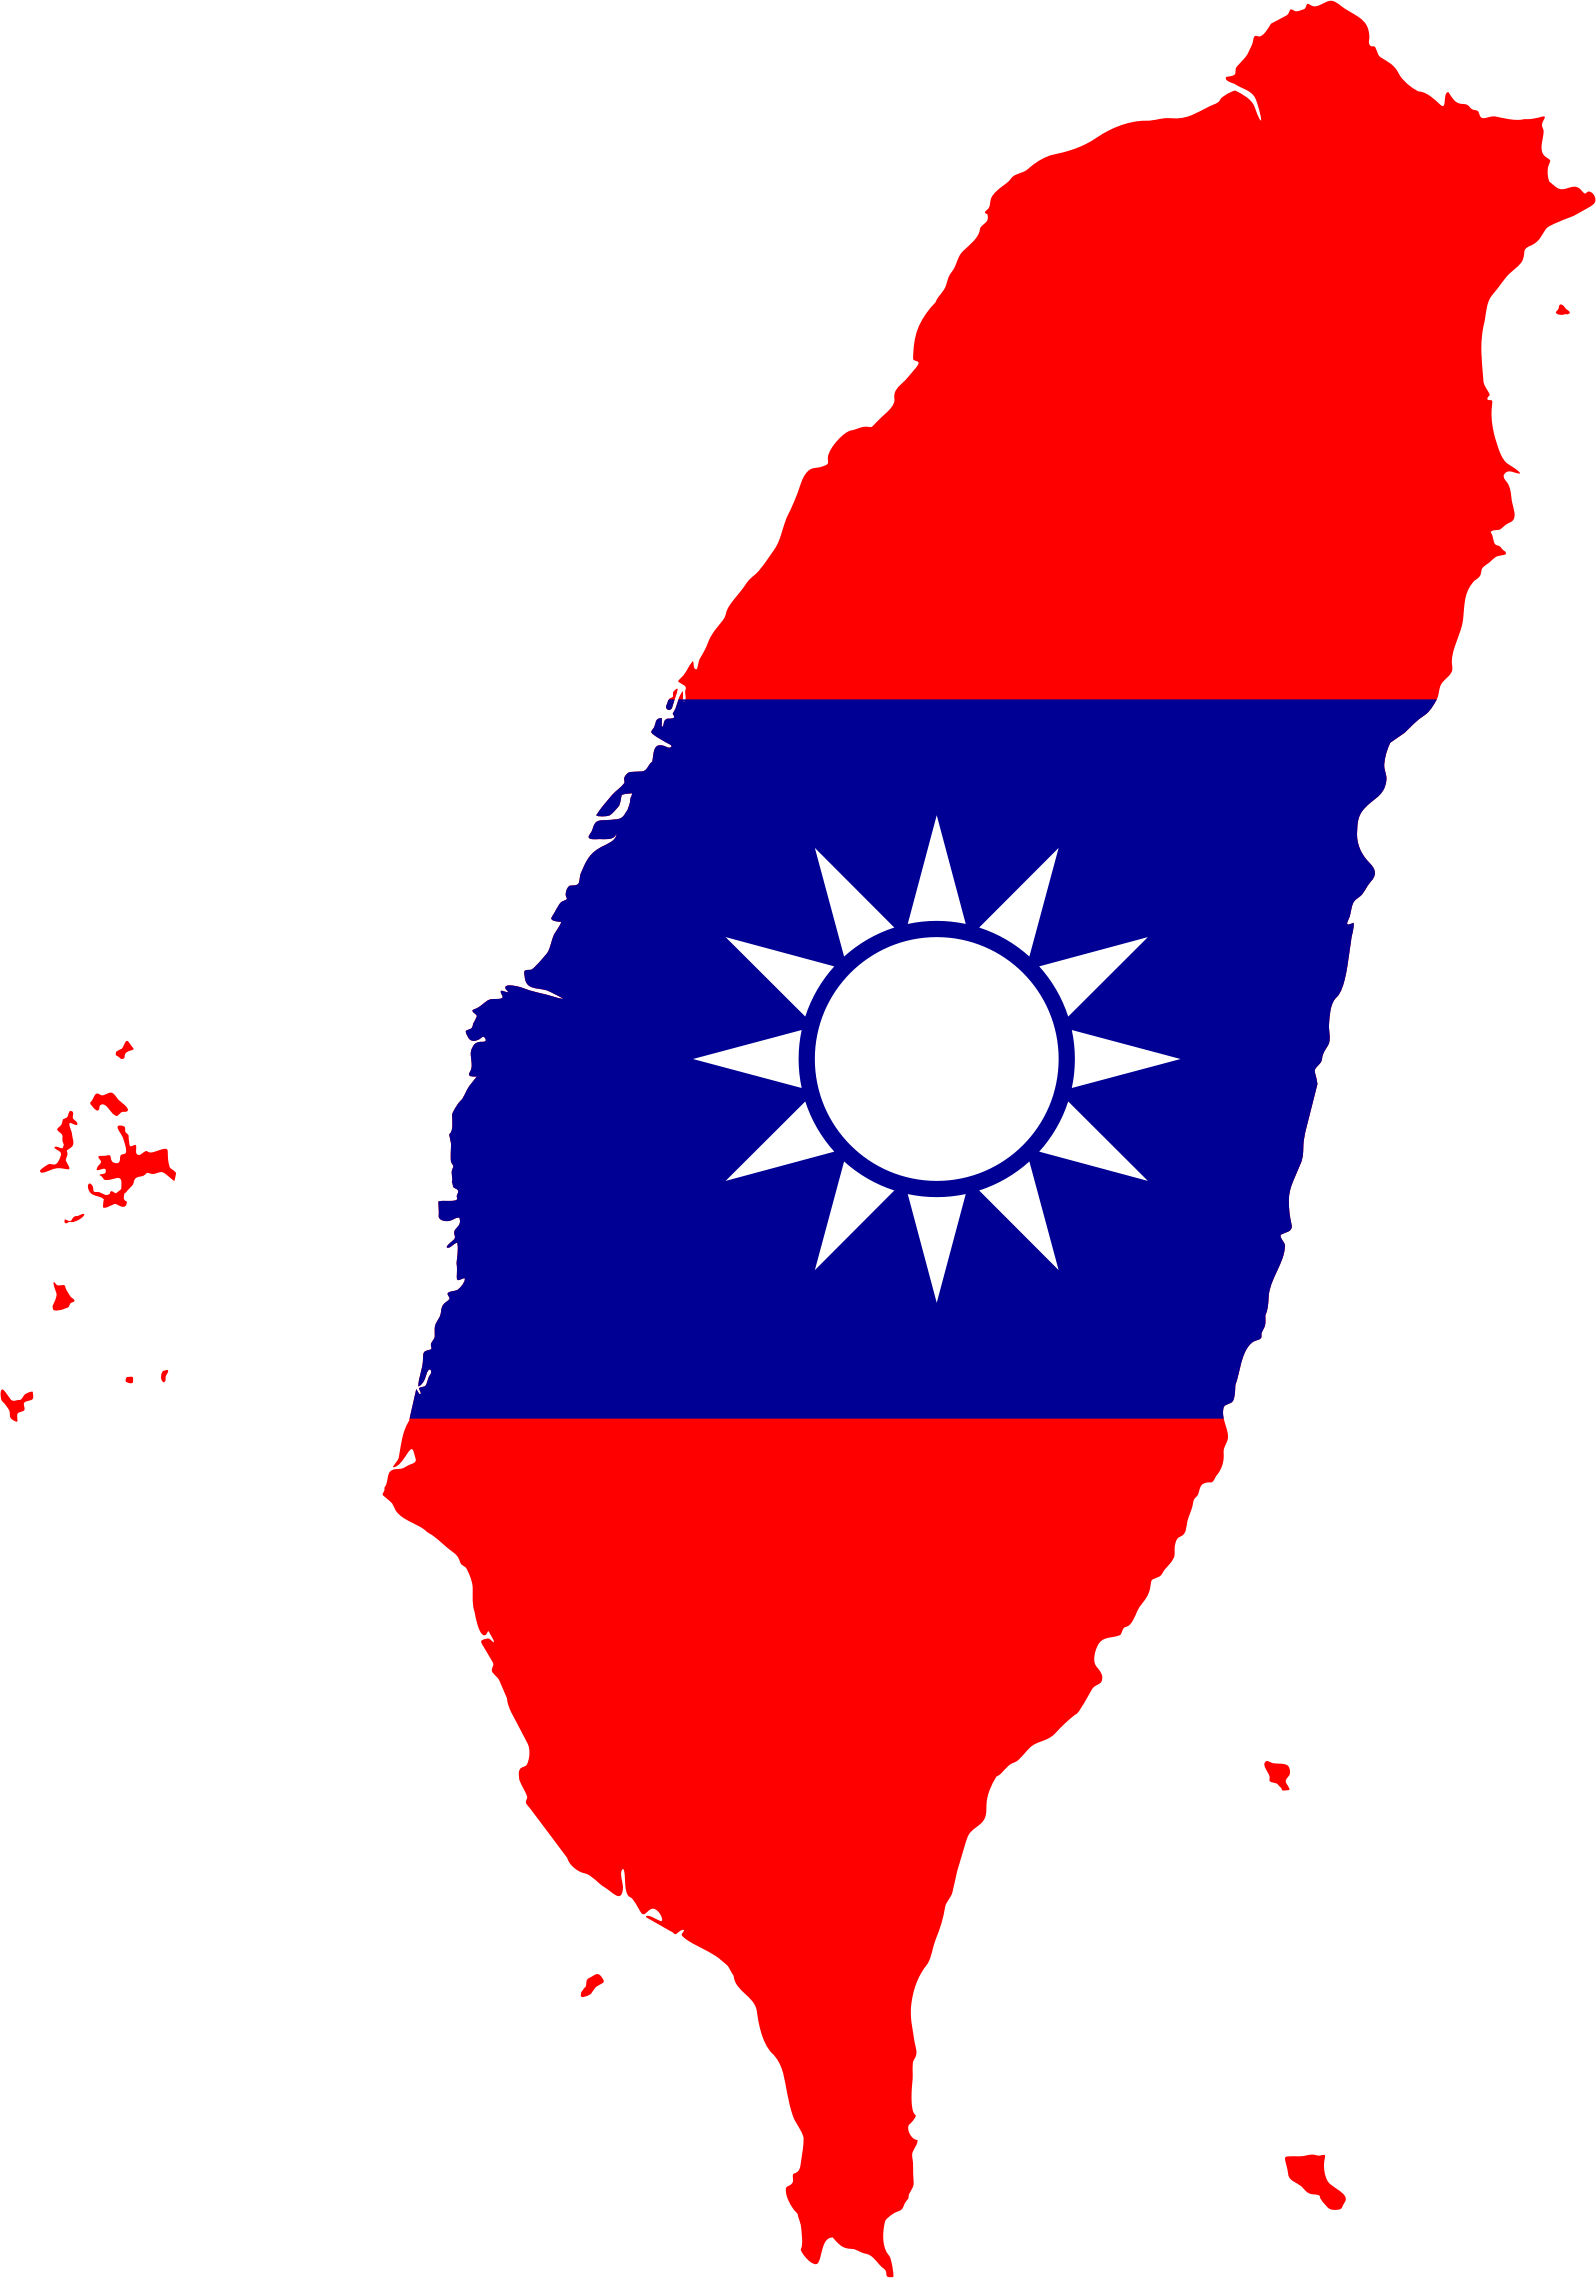 File:Taiwan symbol.png